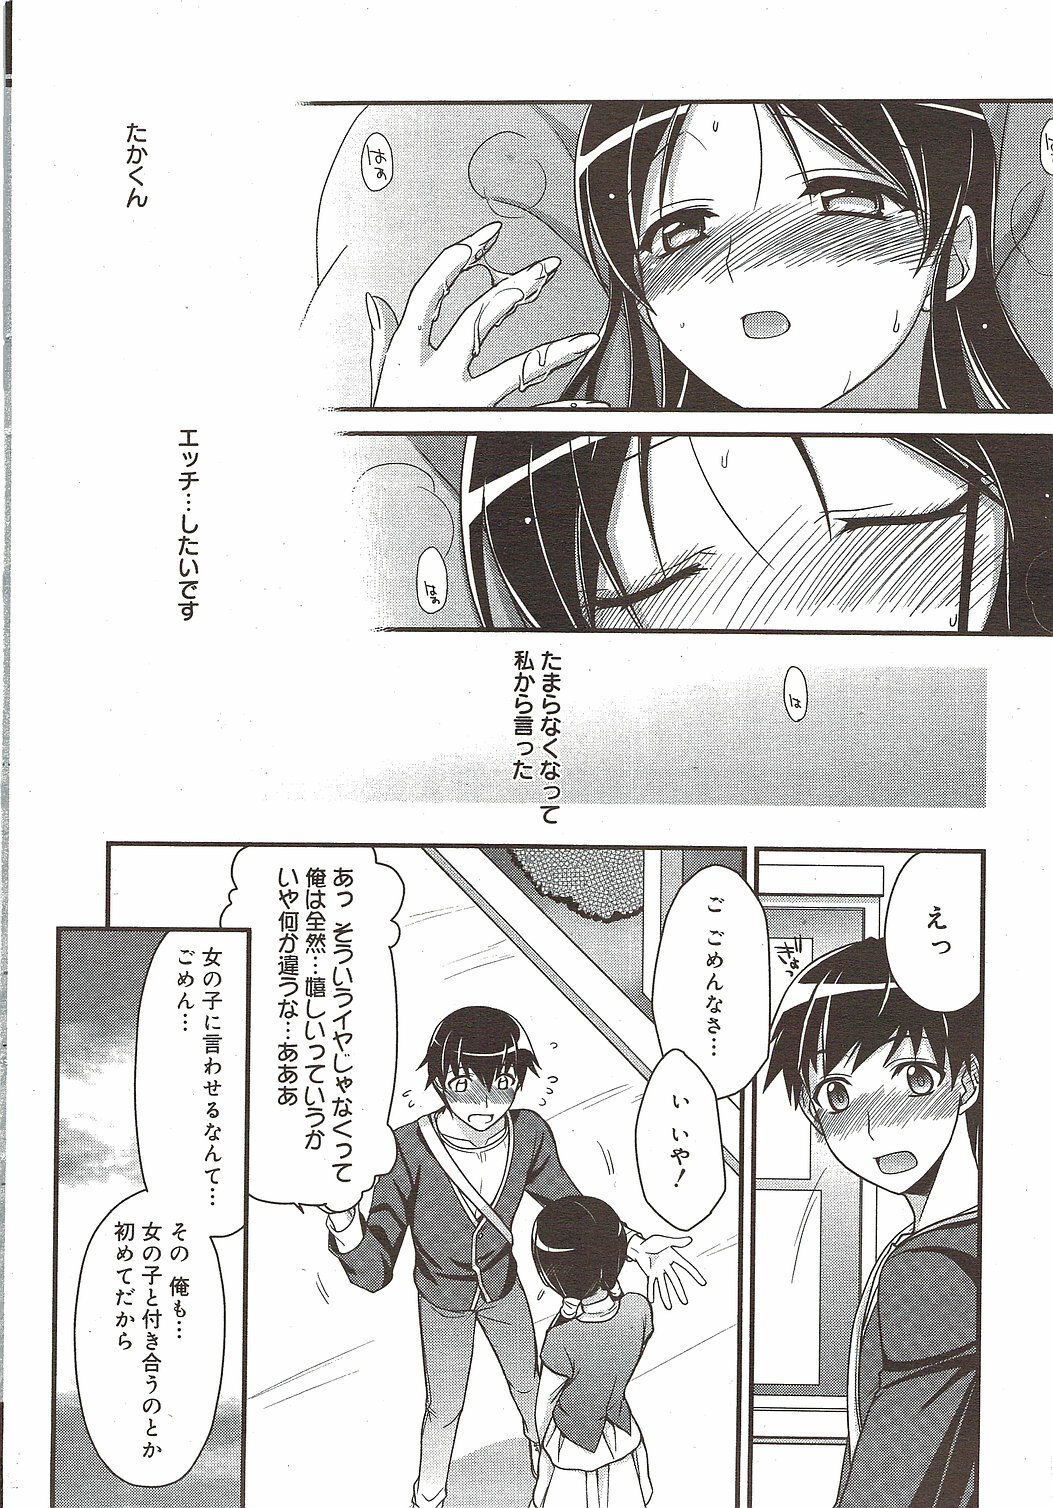 Manga Bangaichi 2009-12 page 26 full